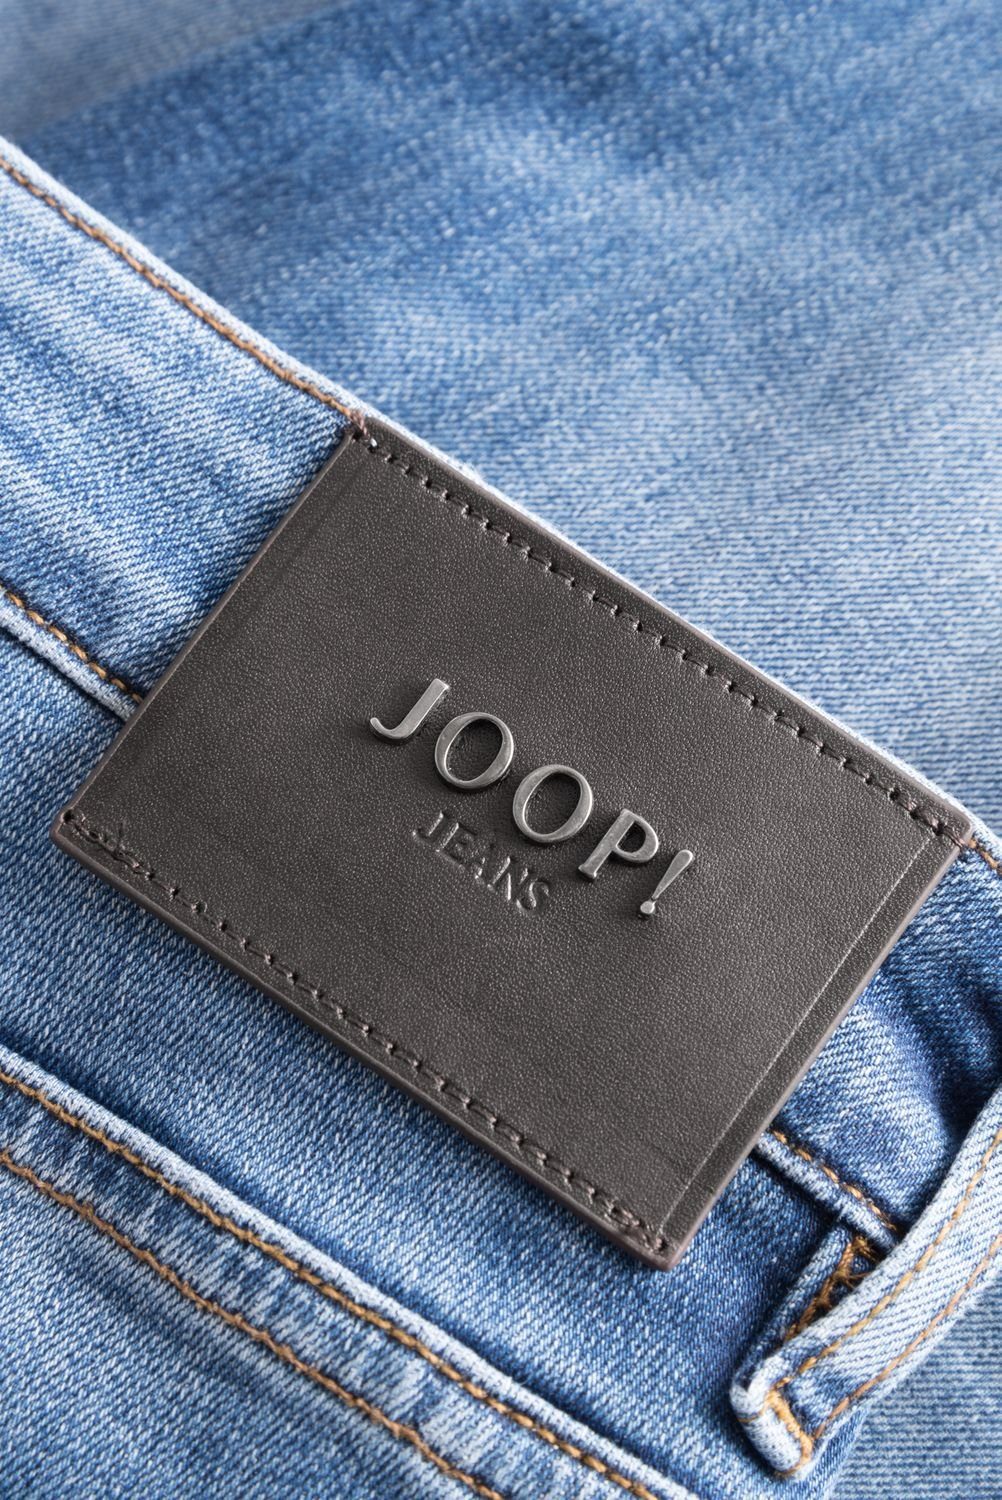 MITCH mit Joop! Straight-Jeans Stretch